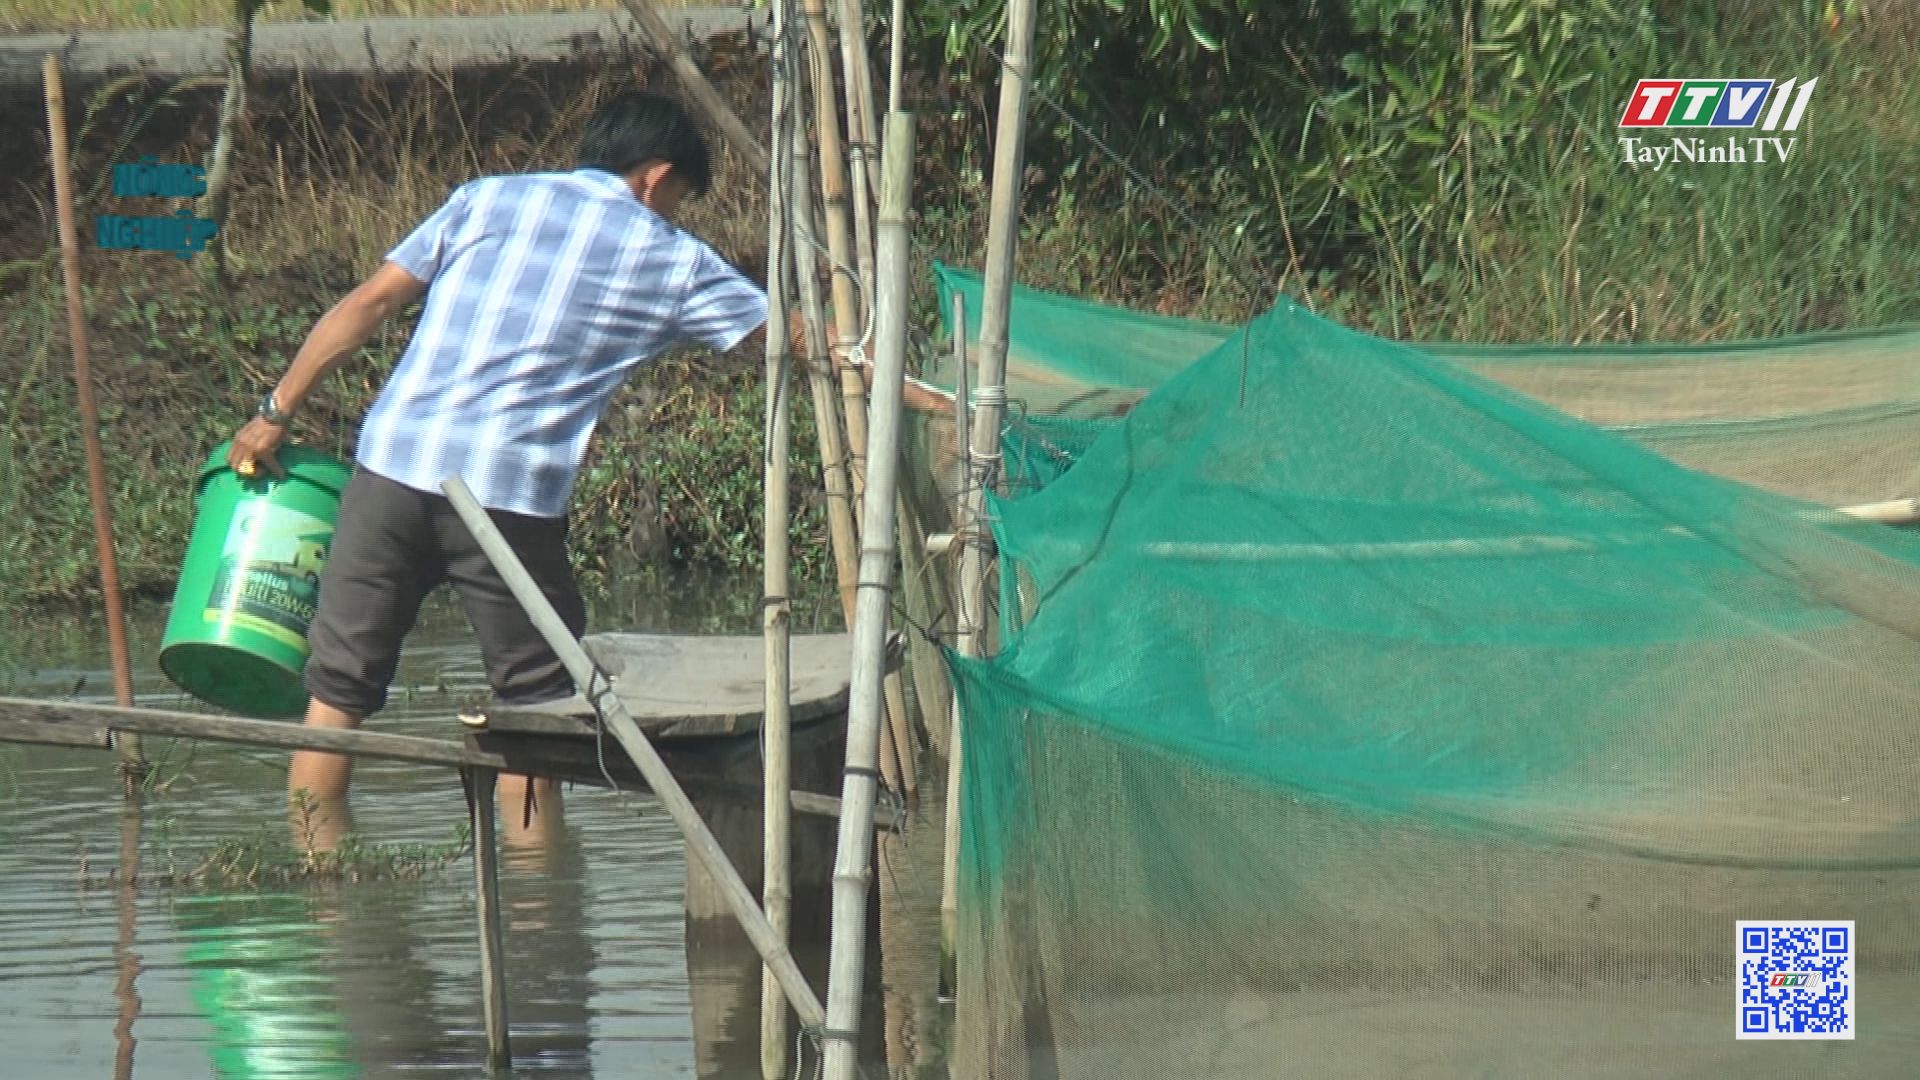 Phước Chỉ phát triển nuôi cá trong vèo | Nông nghiệp Tây Ninh | TayNinhTV